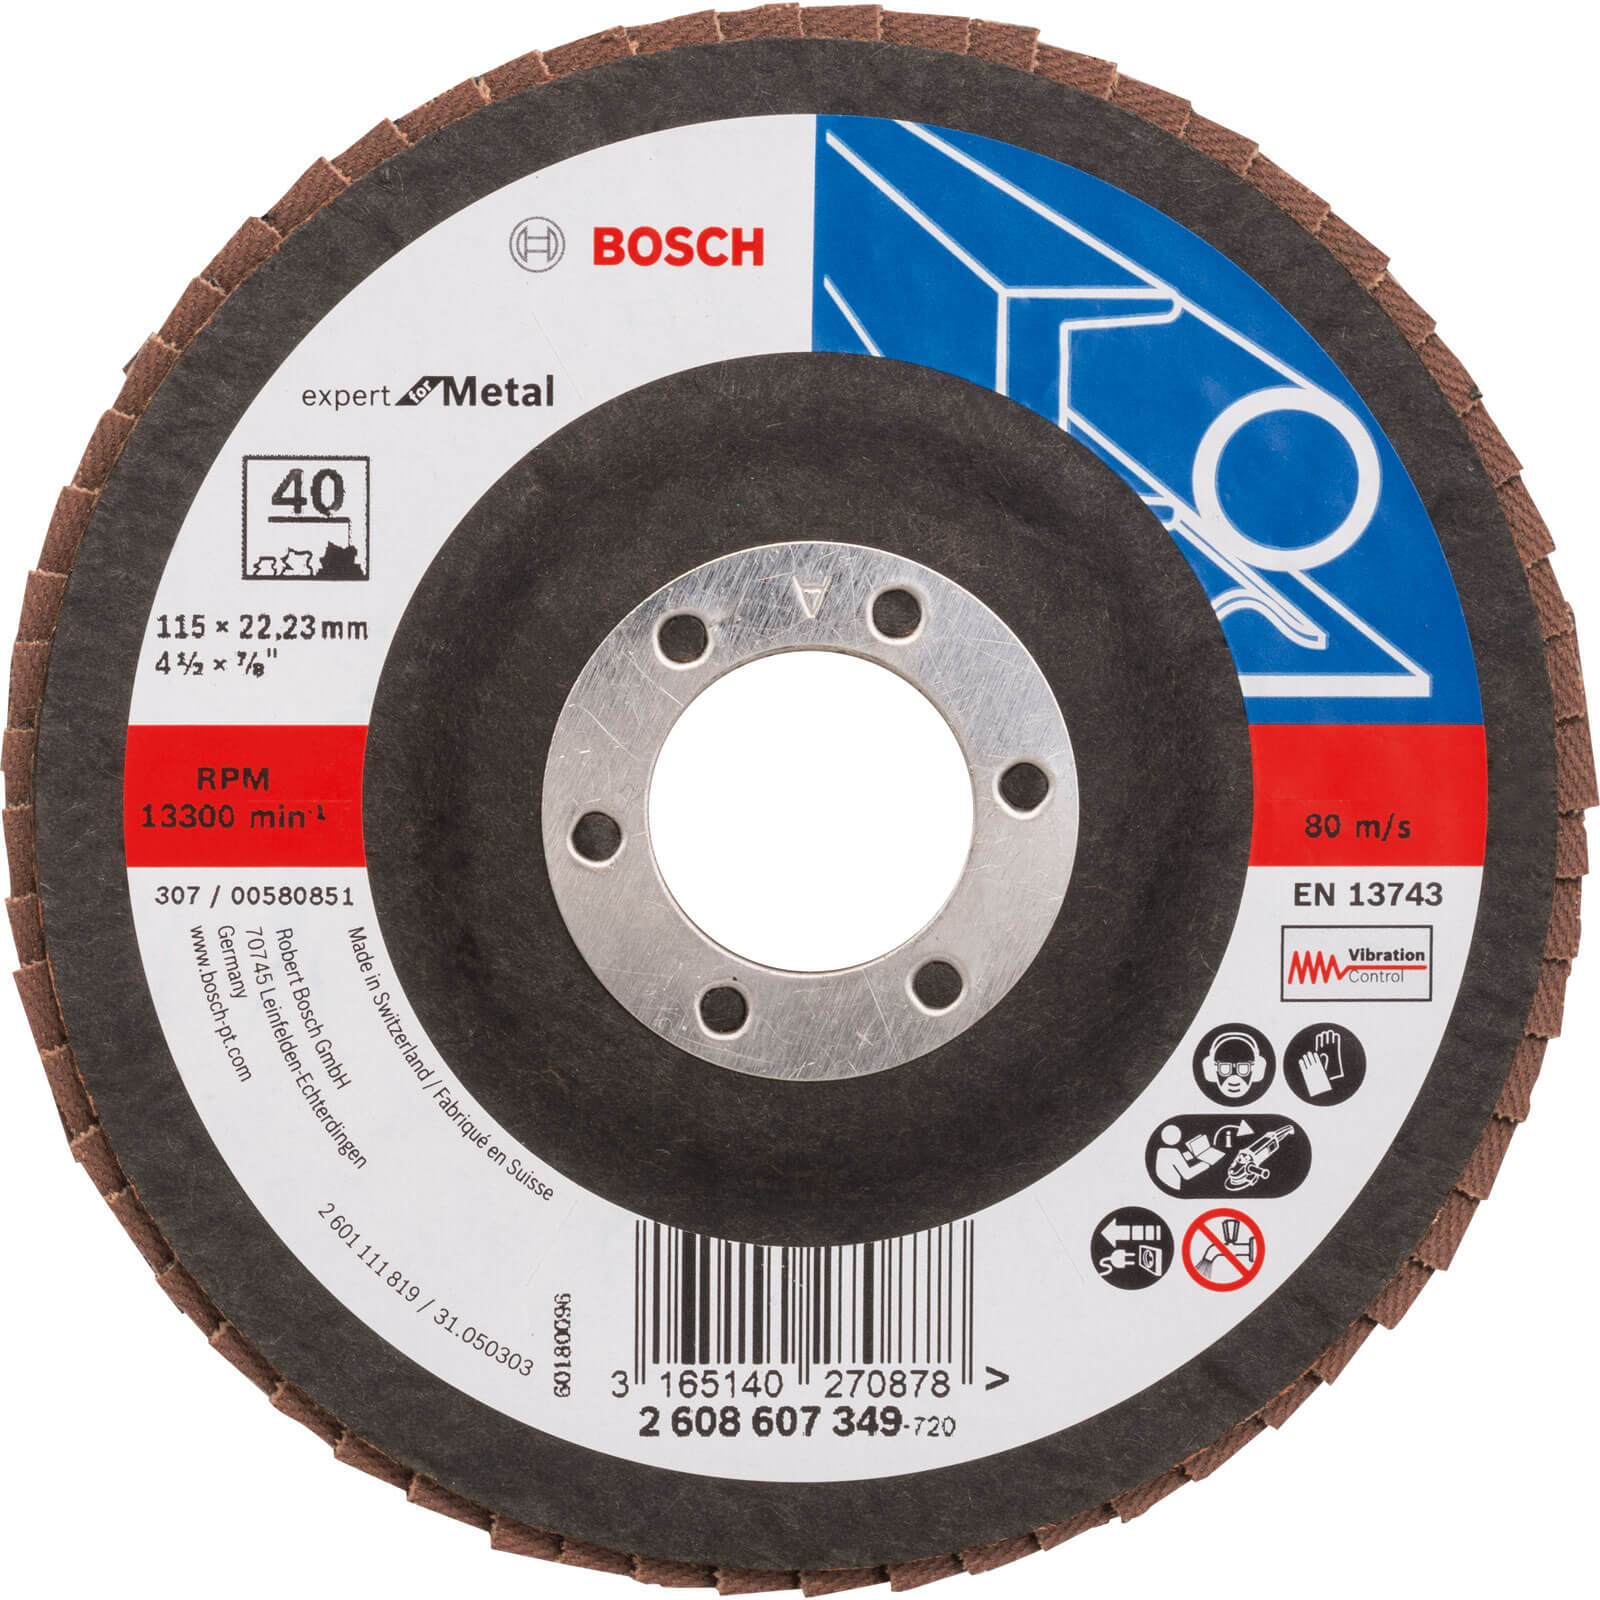 Photos - Cutting Disc Bosch Expert X551 for Metal Flap Disc 115mm 40g Pack of 1 2608607349 